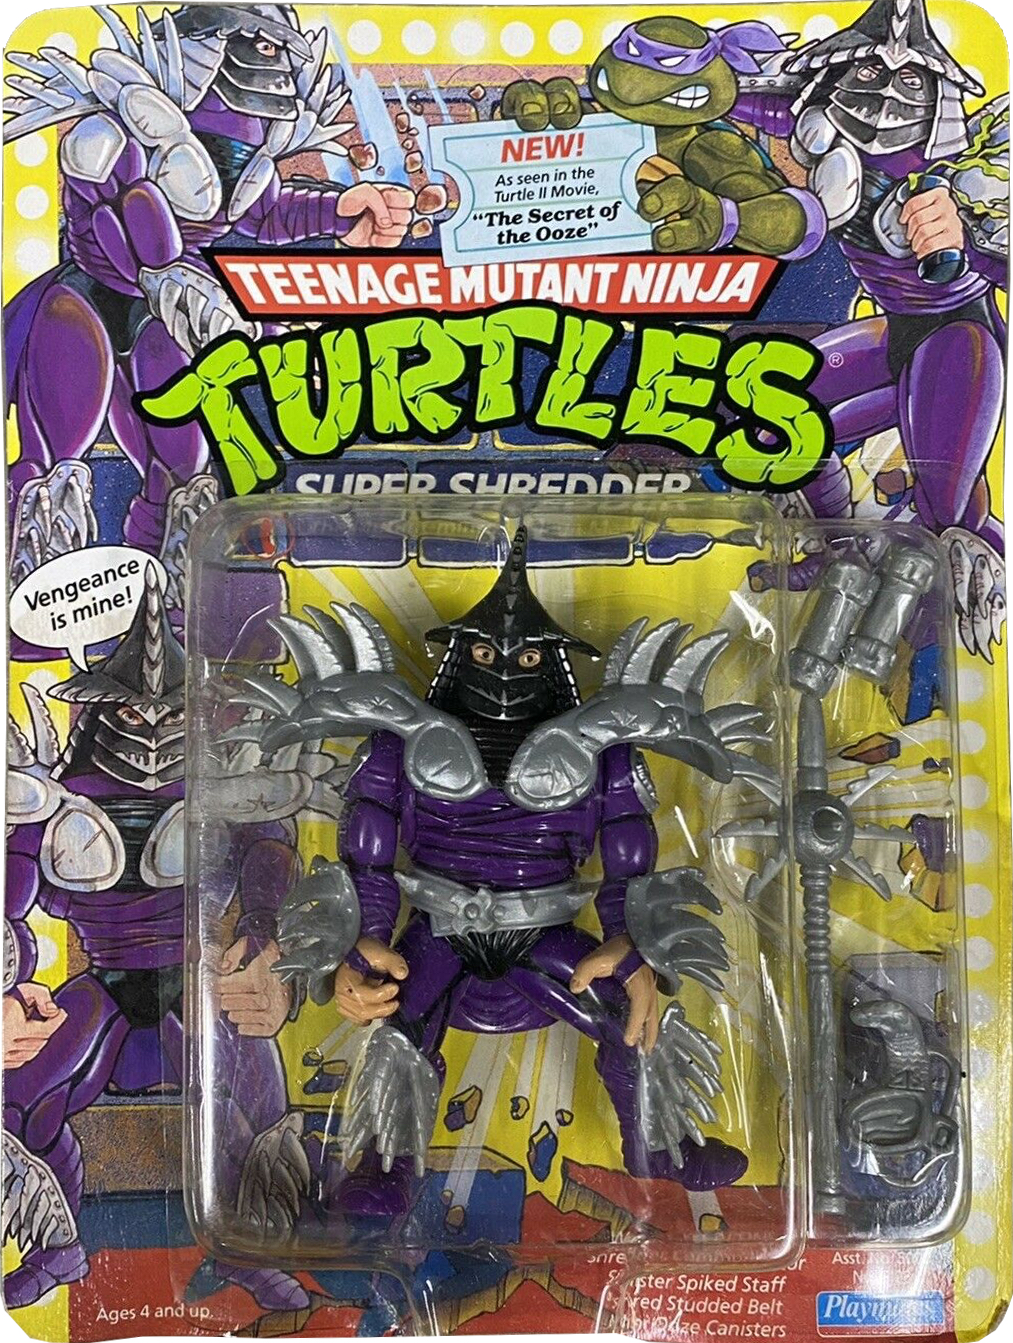 Shredder from Teenage Mutant Ninja Turtles